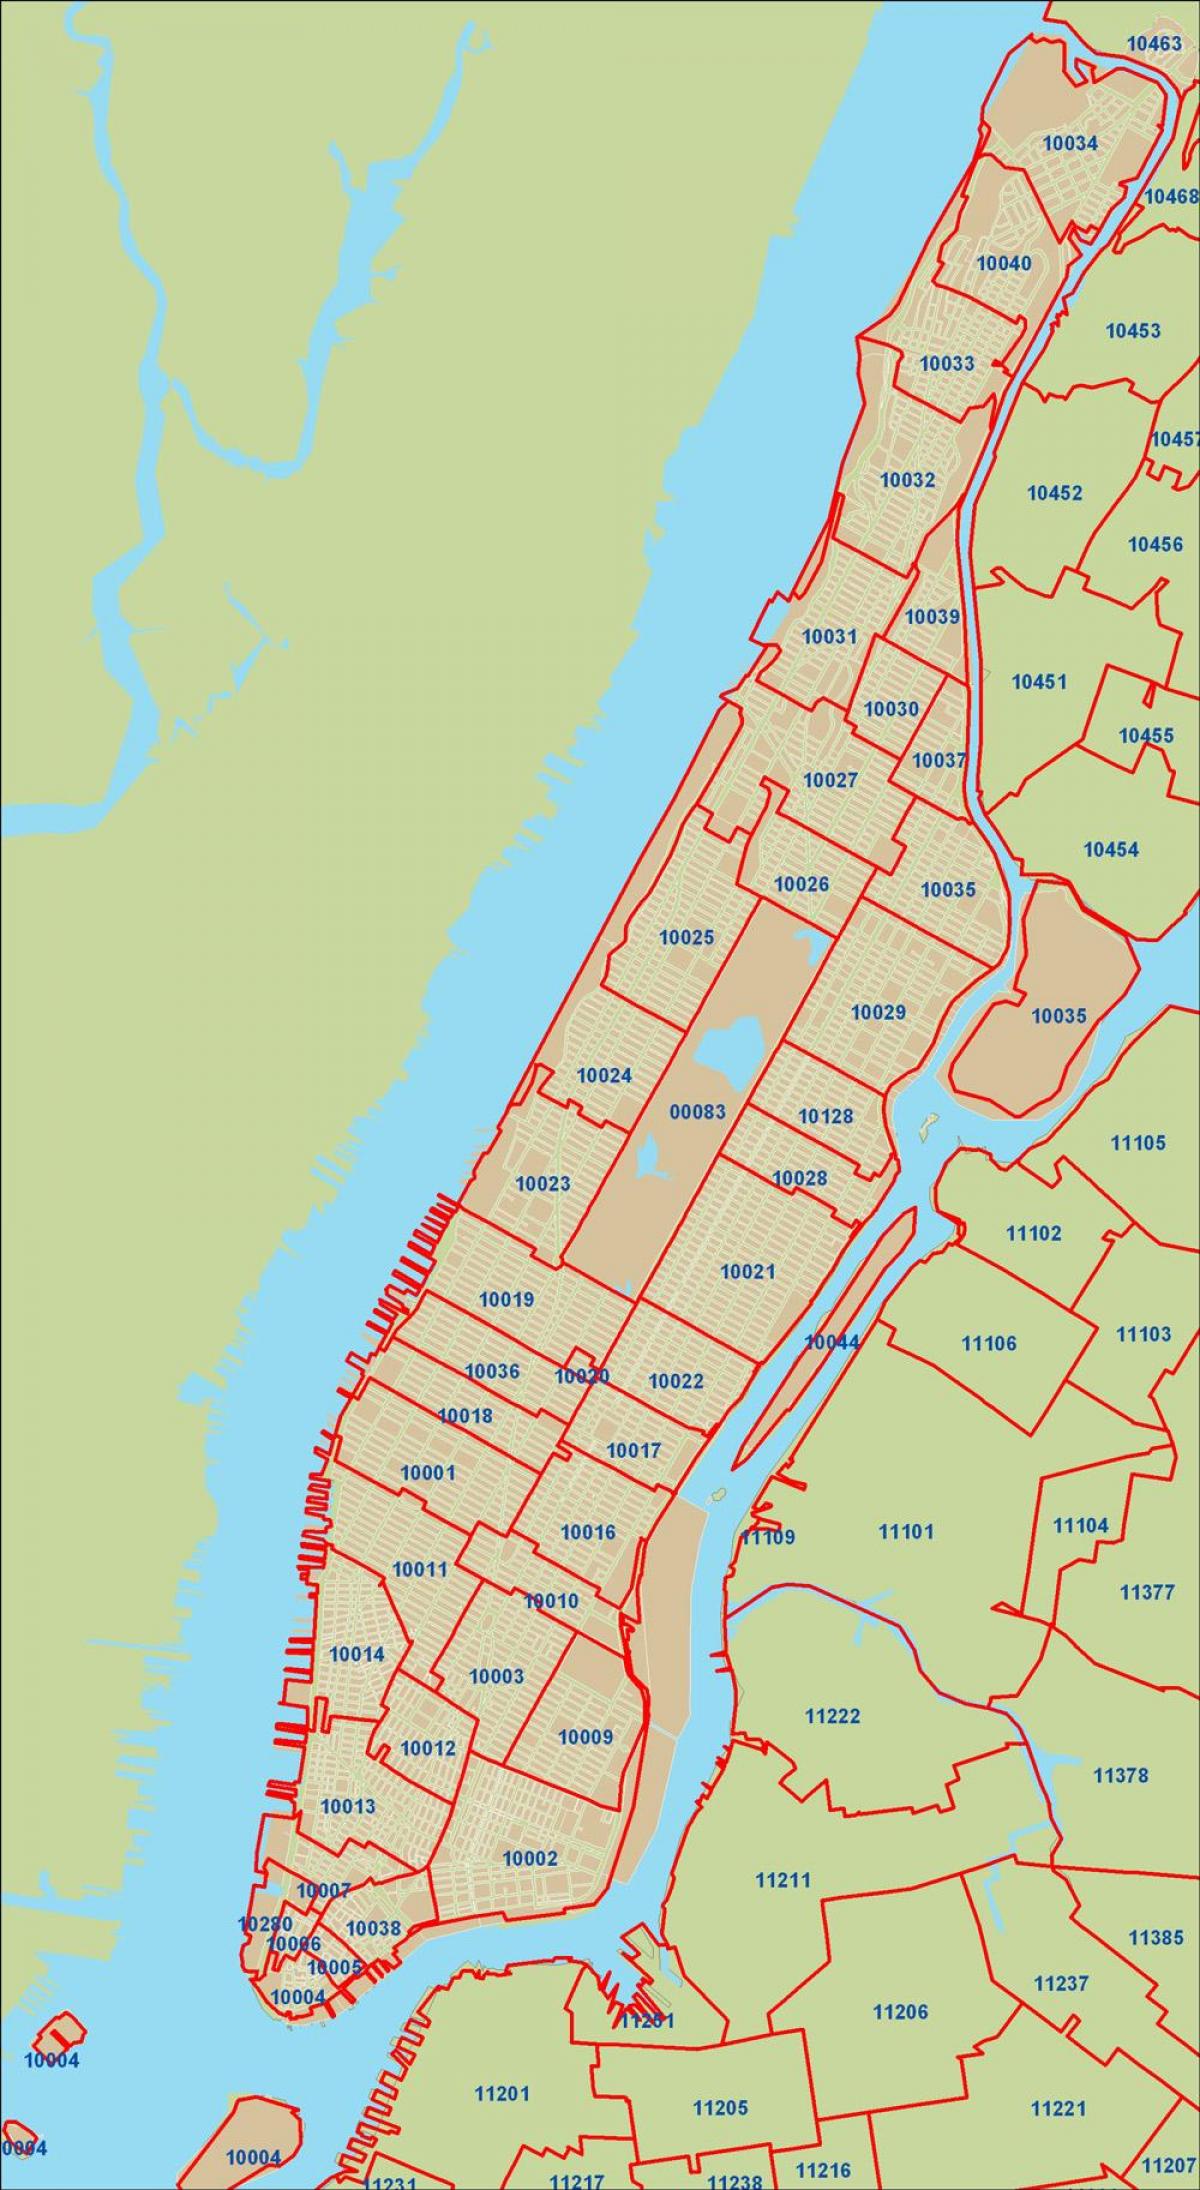 NYC zipコードはマンハッタンの地図